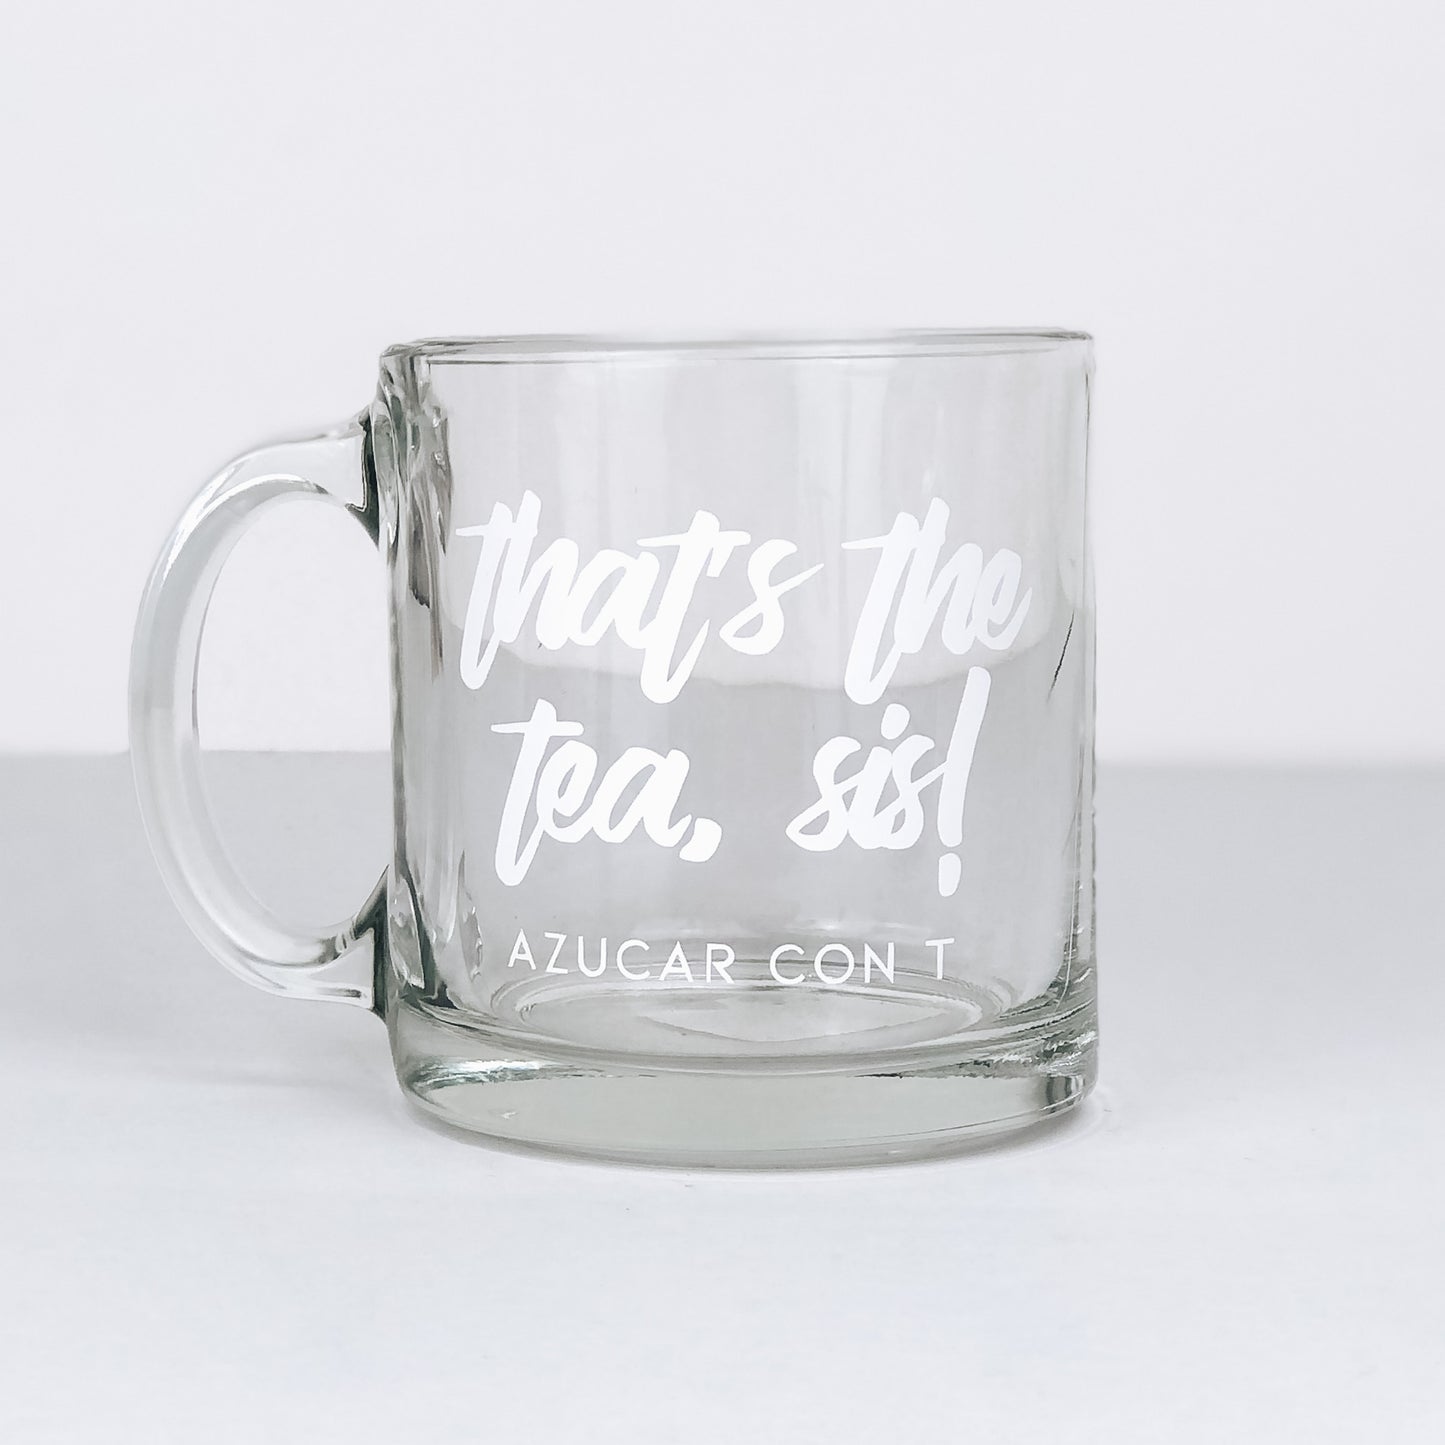 Azucar - That’s the Tea, Sis Mug